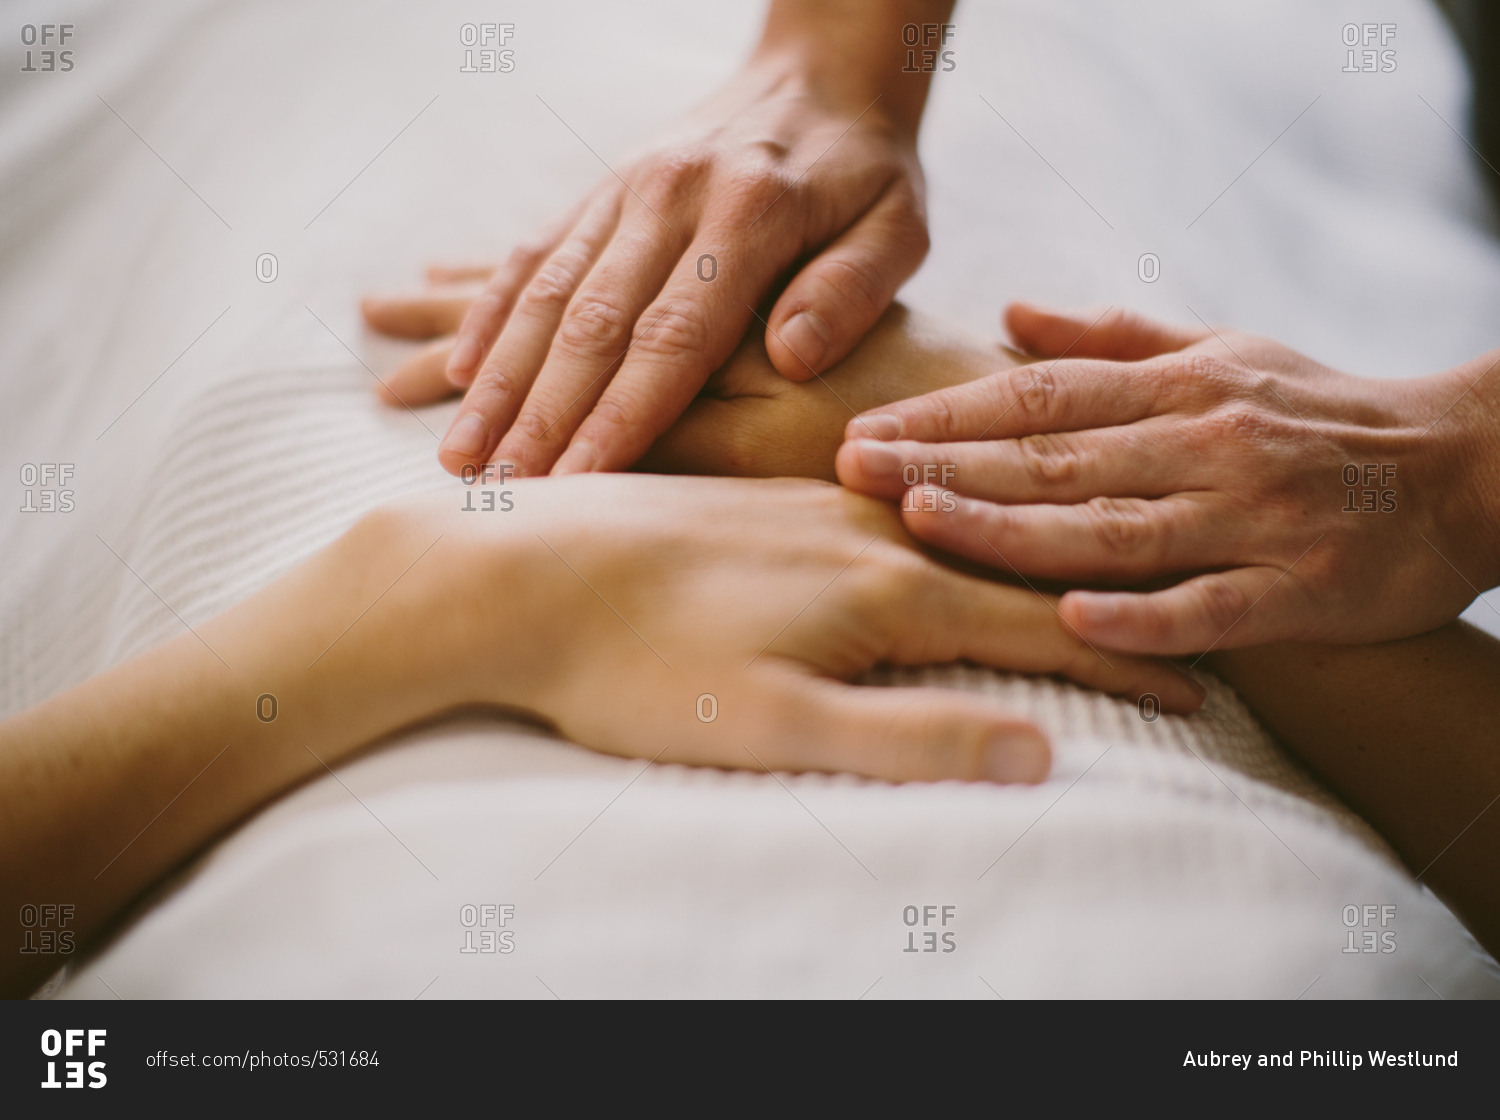 Hands during a massage